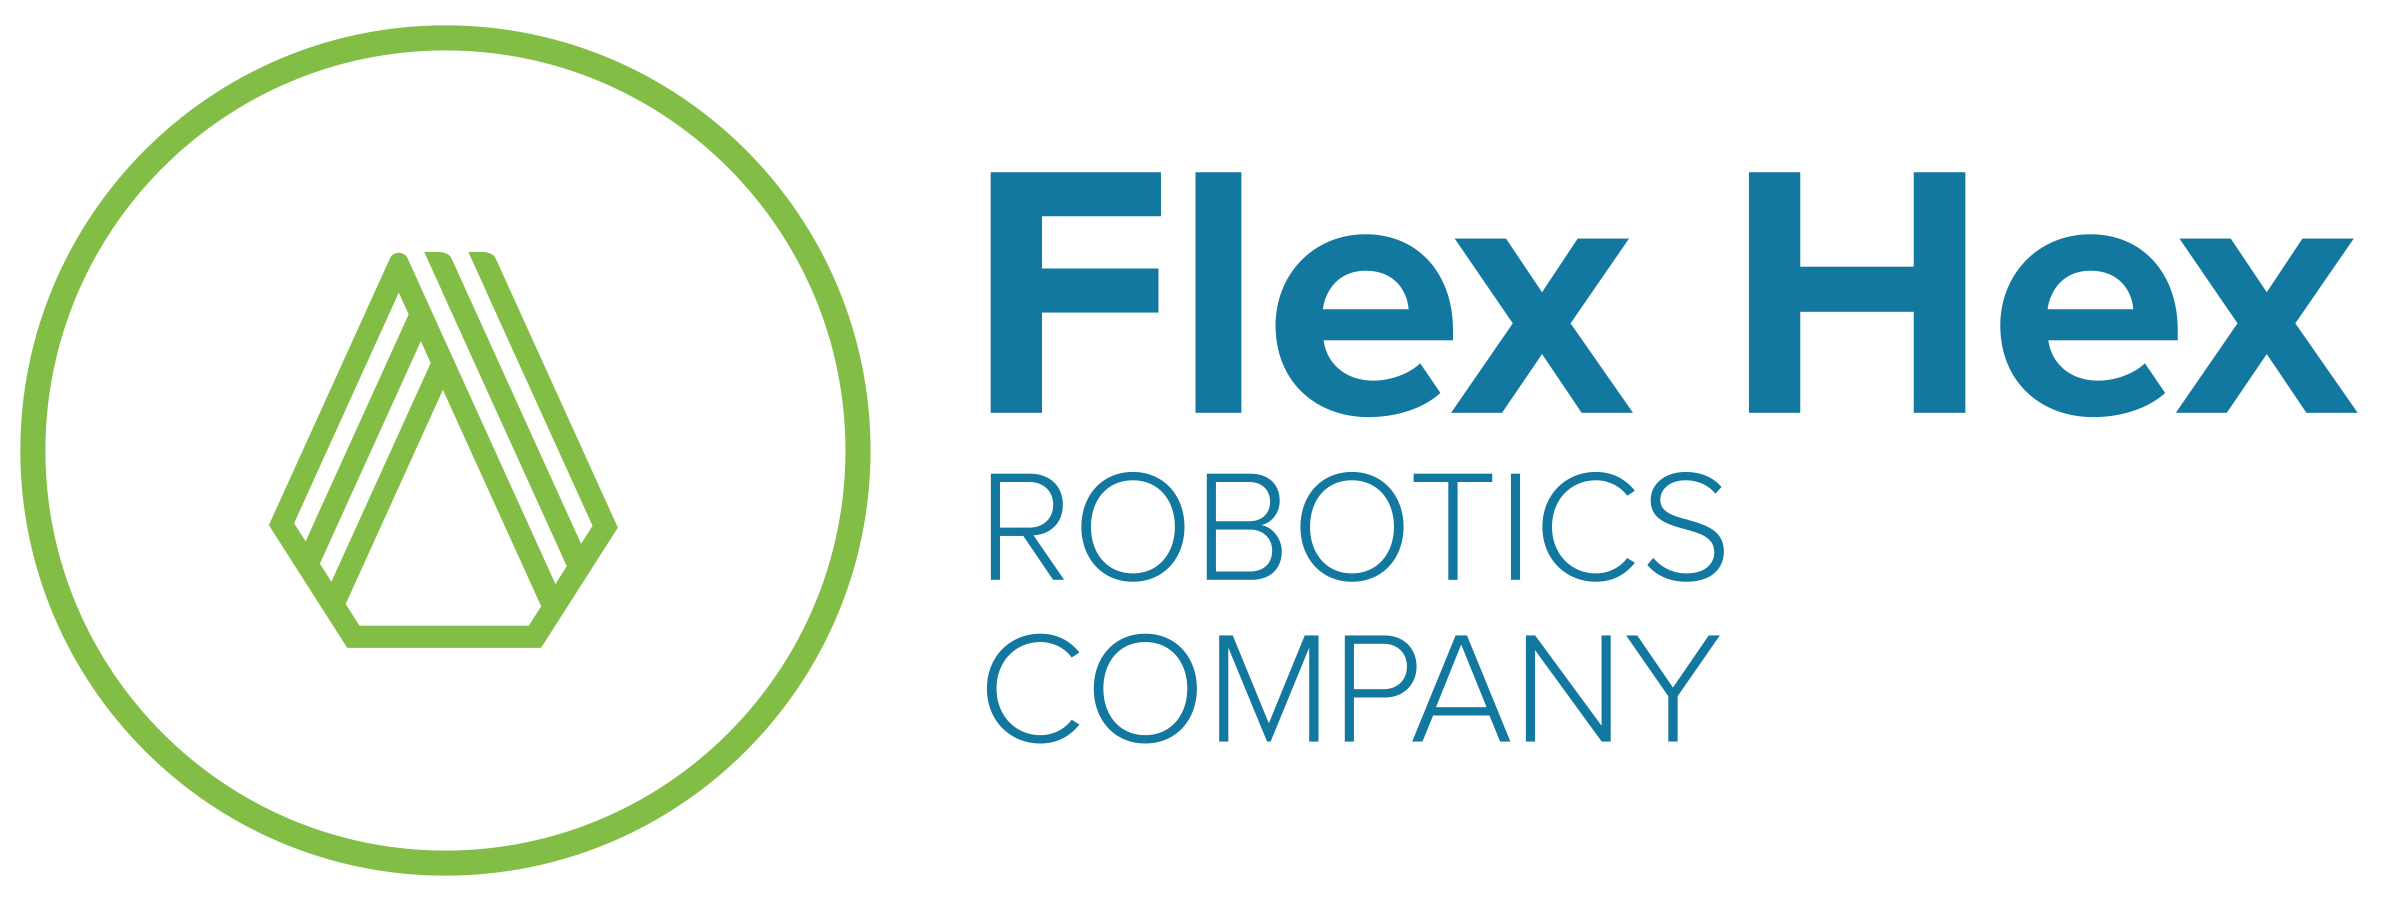 FlexHex_logo